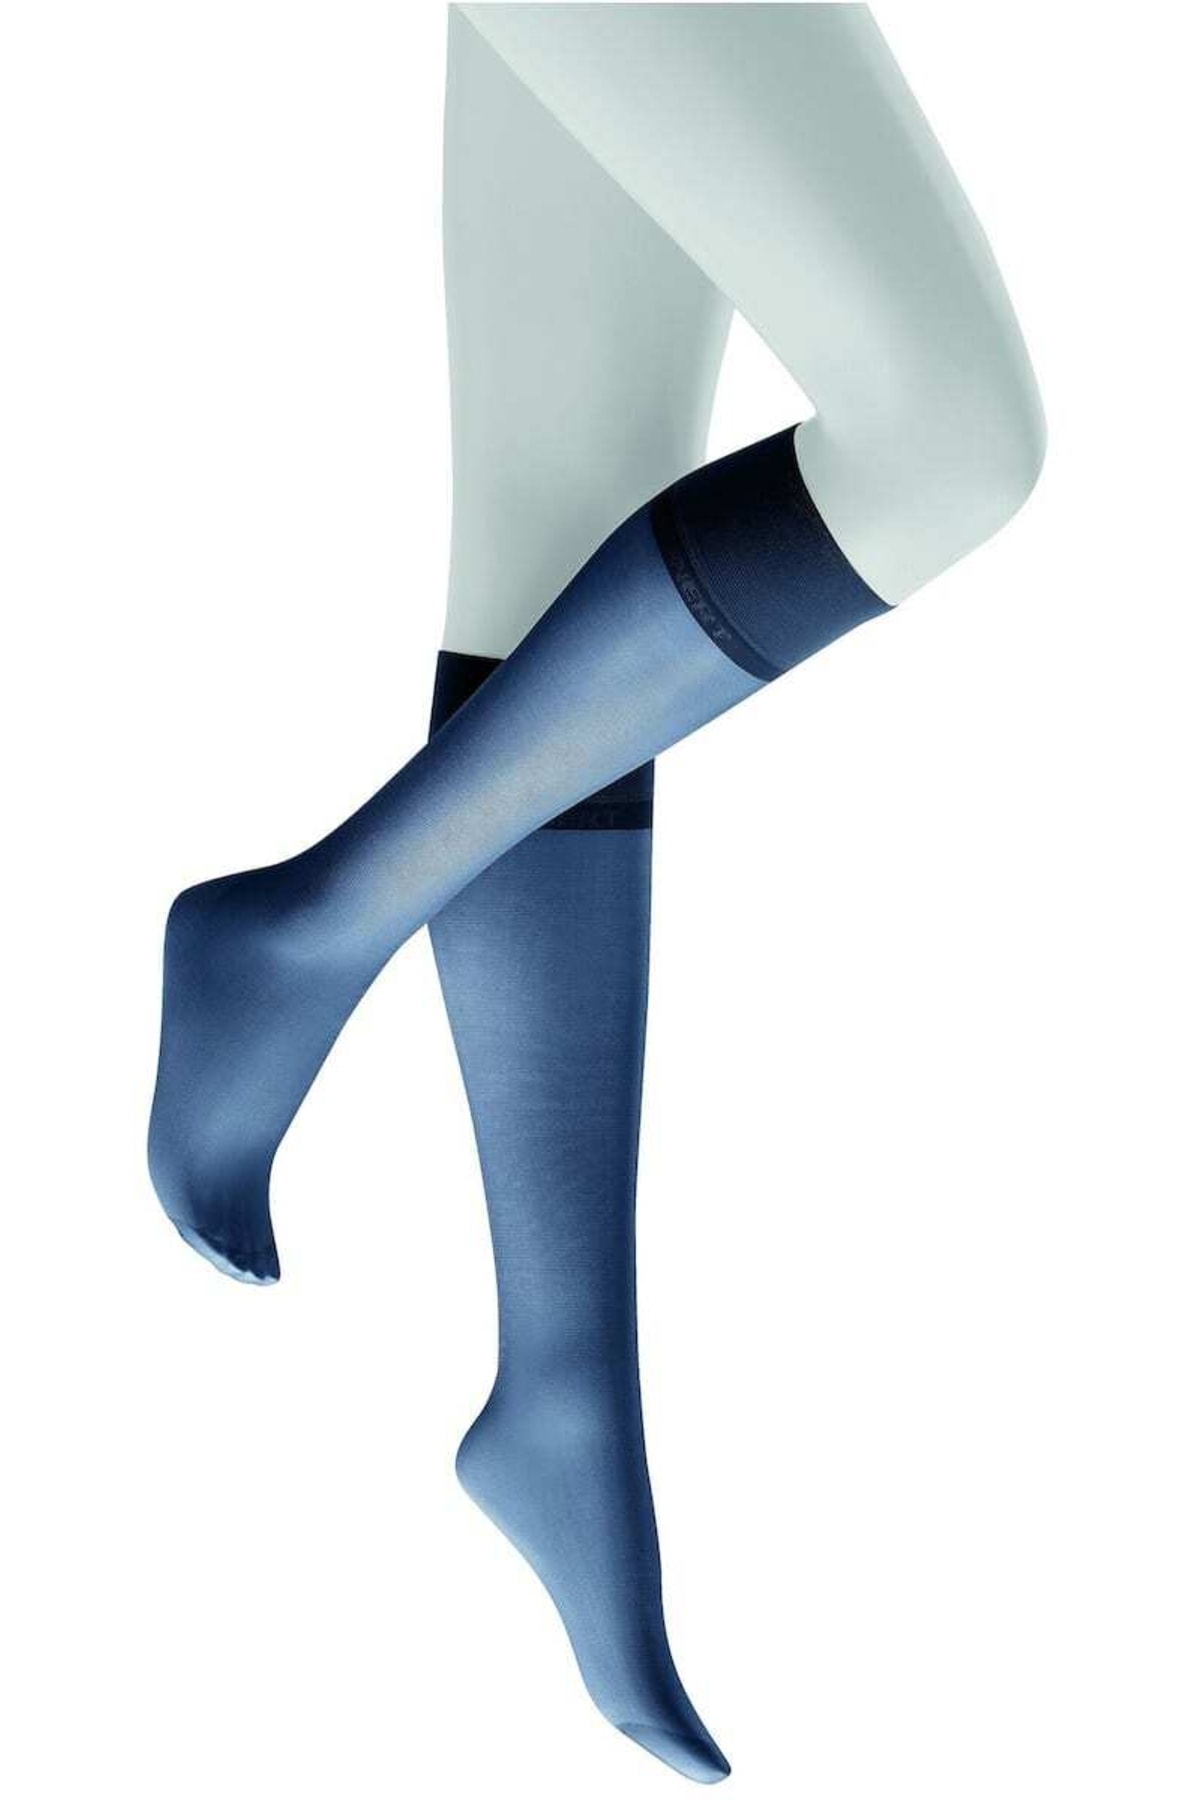 KUNERT Socken Blau Elegant für Damen - 35-38